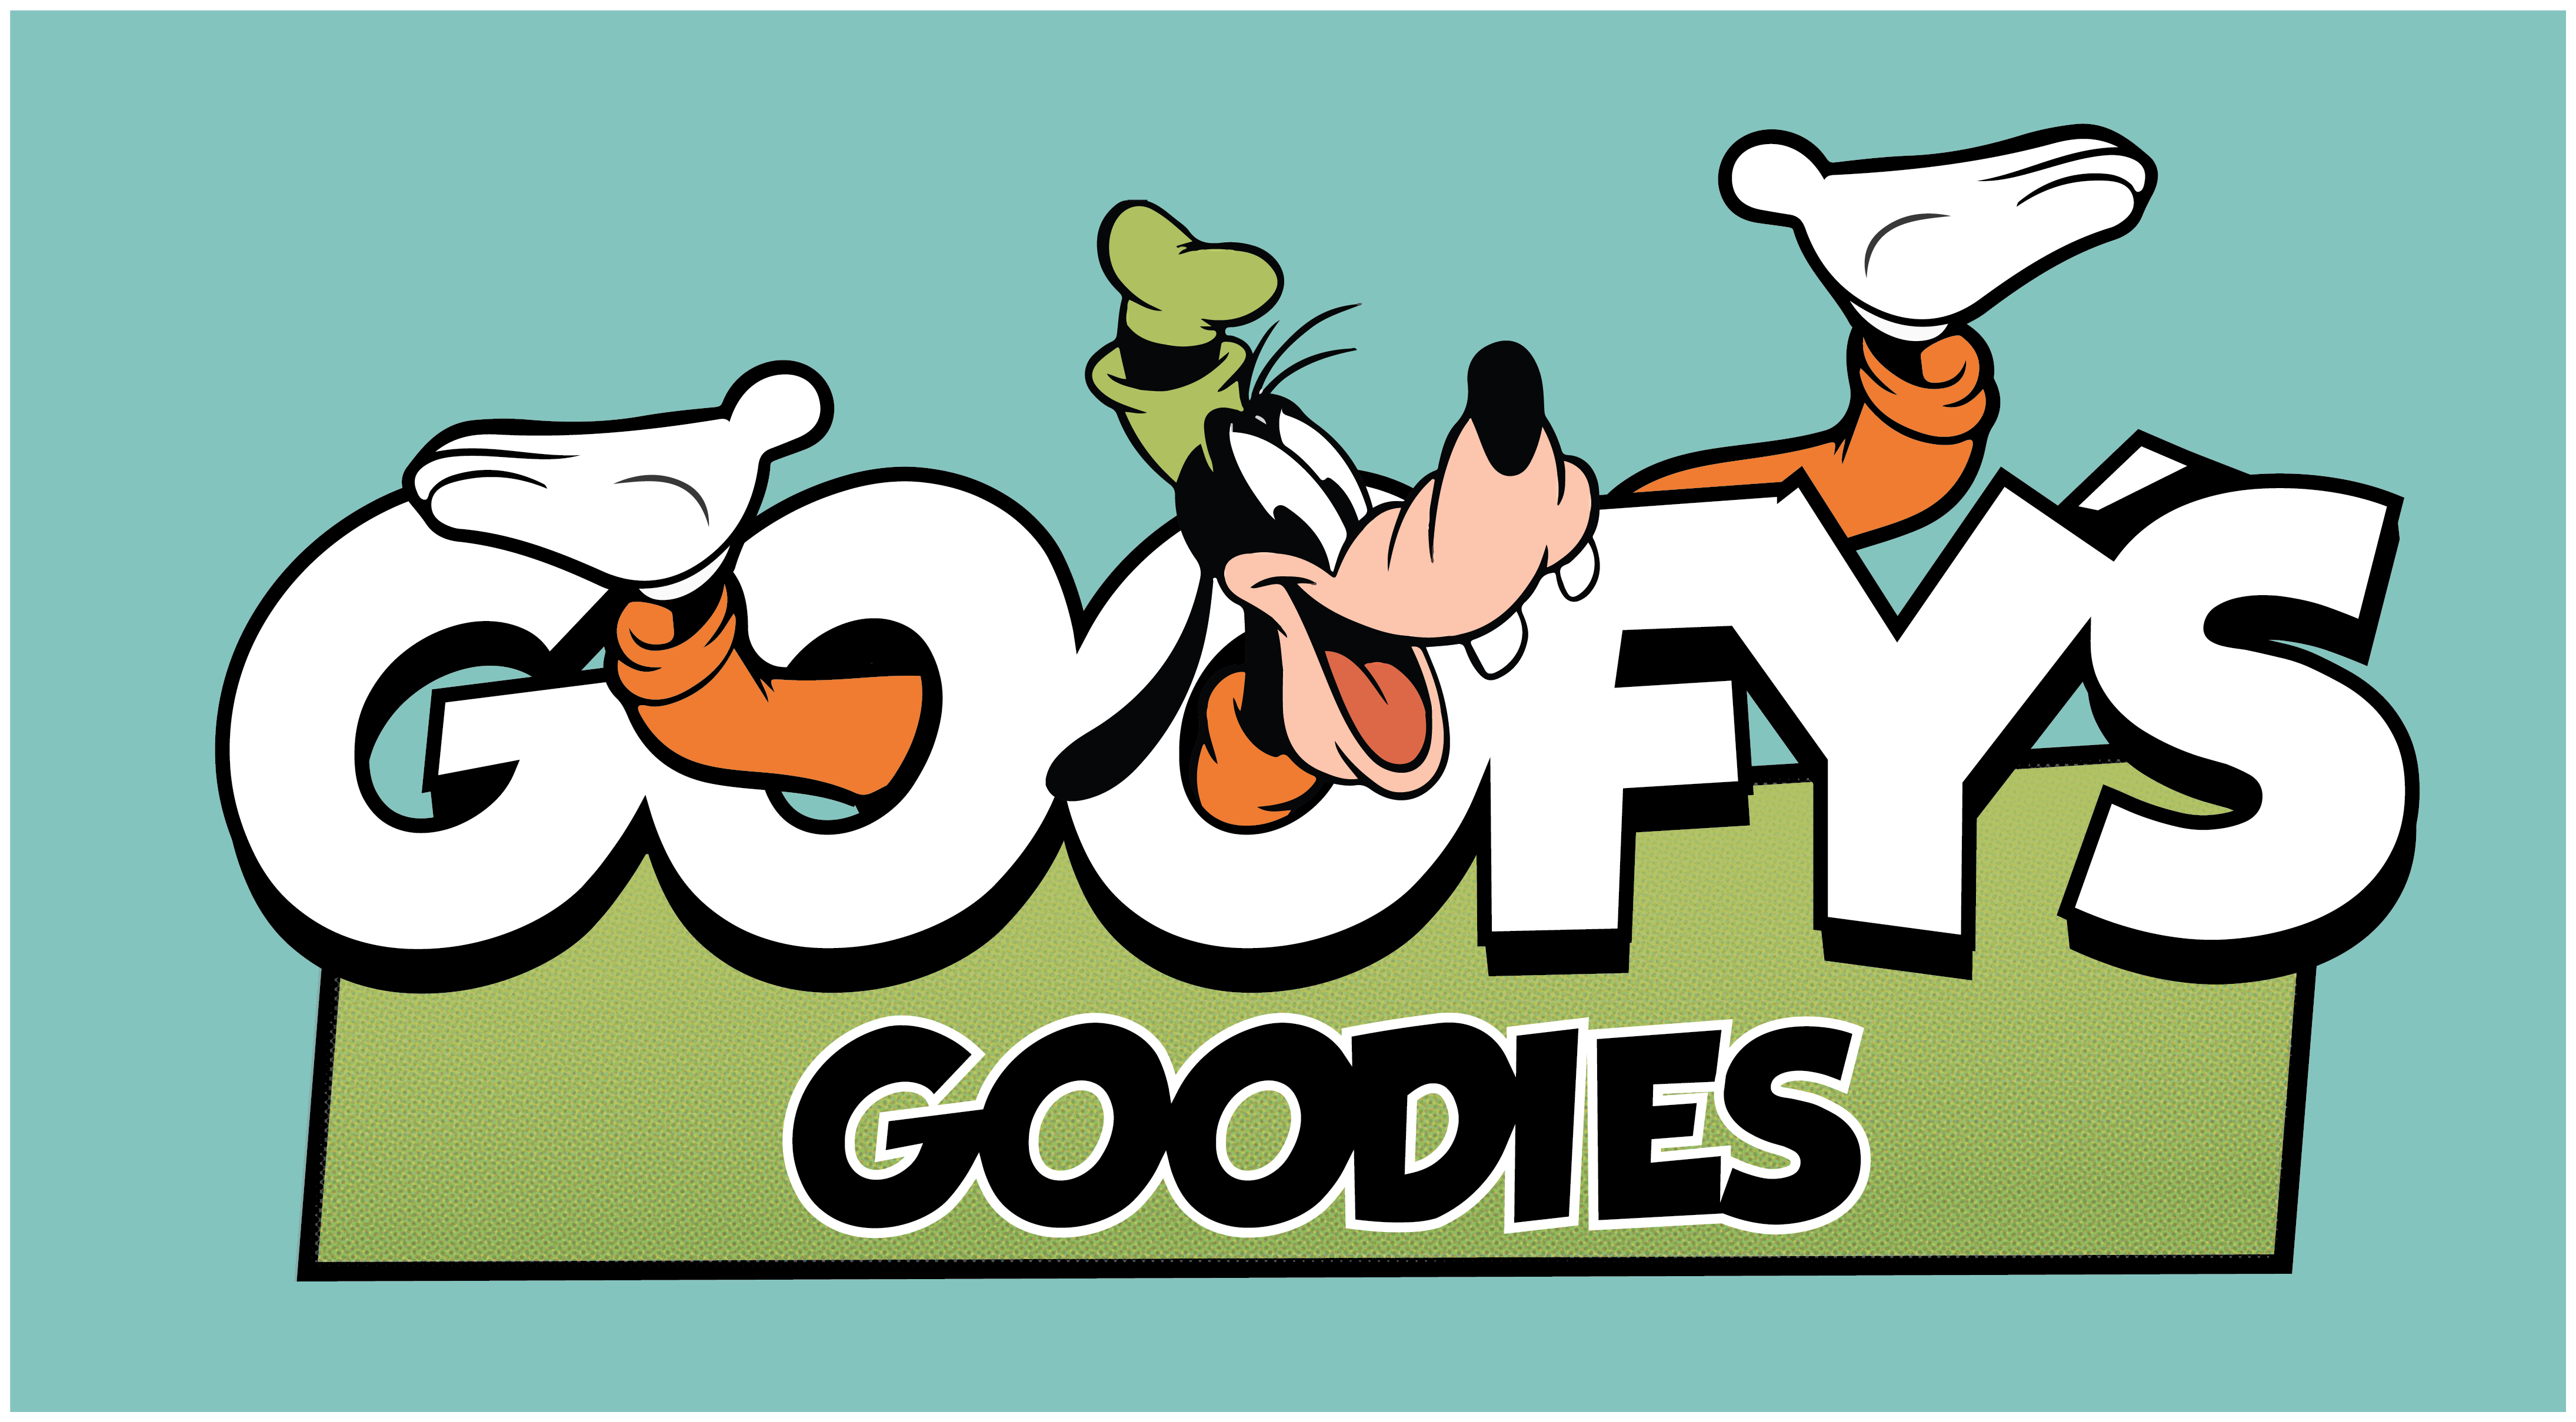 Goofy-Goodies